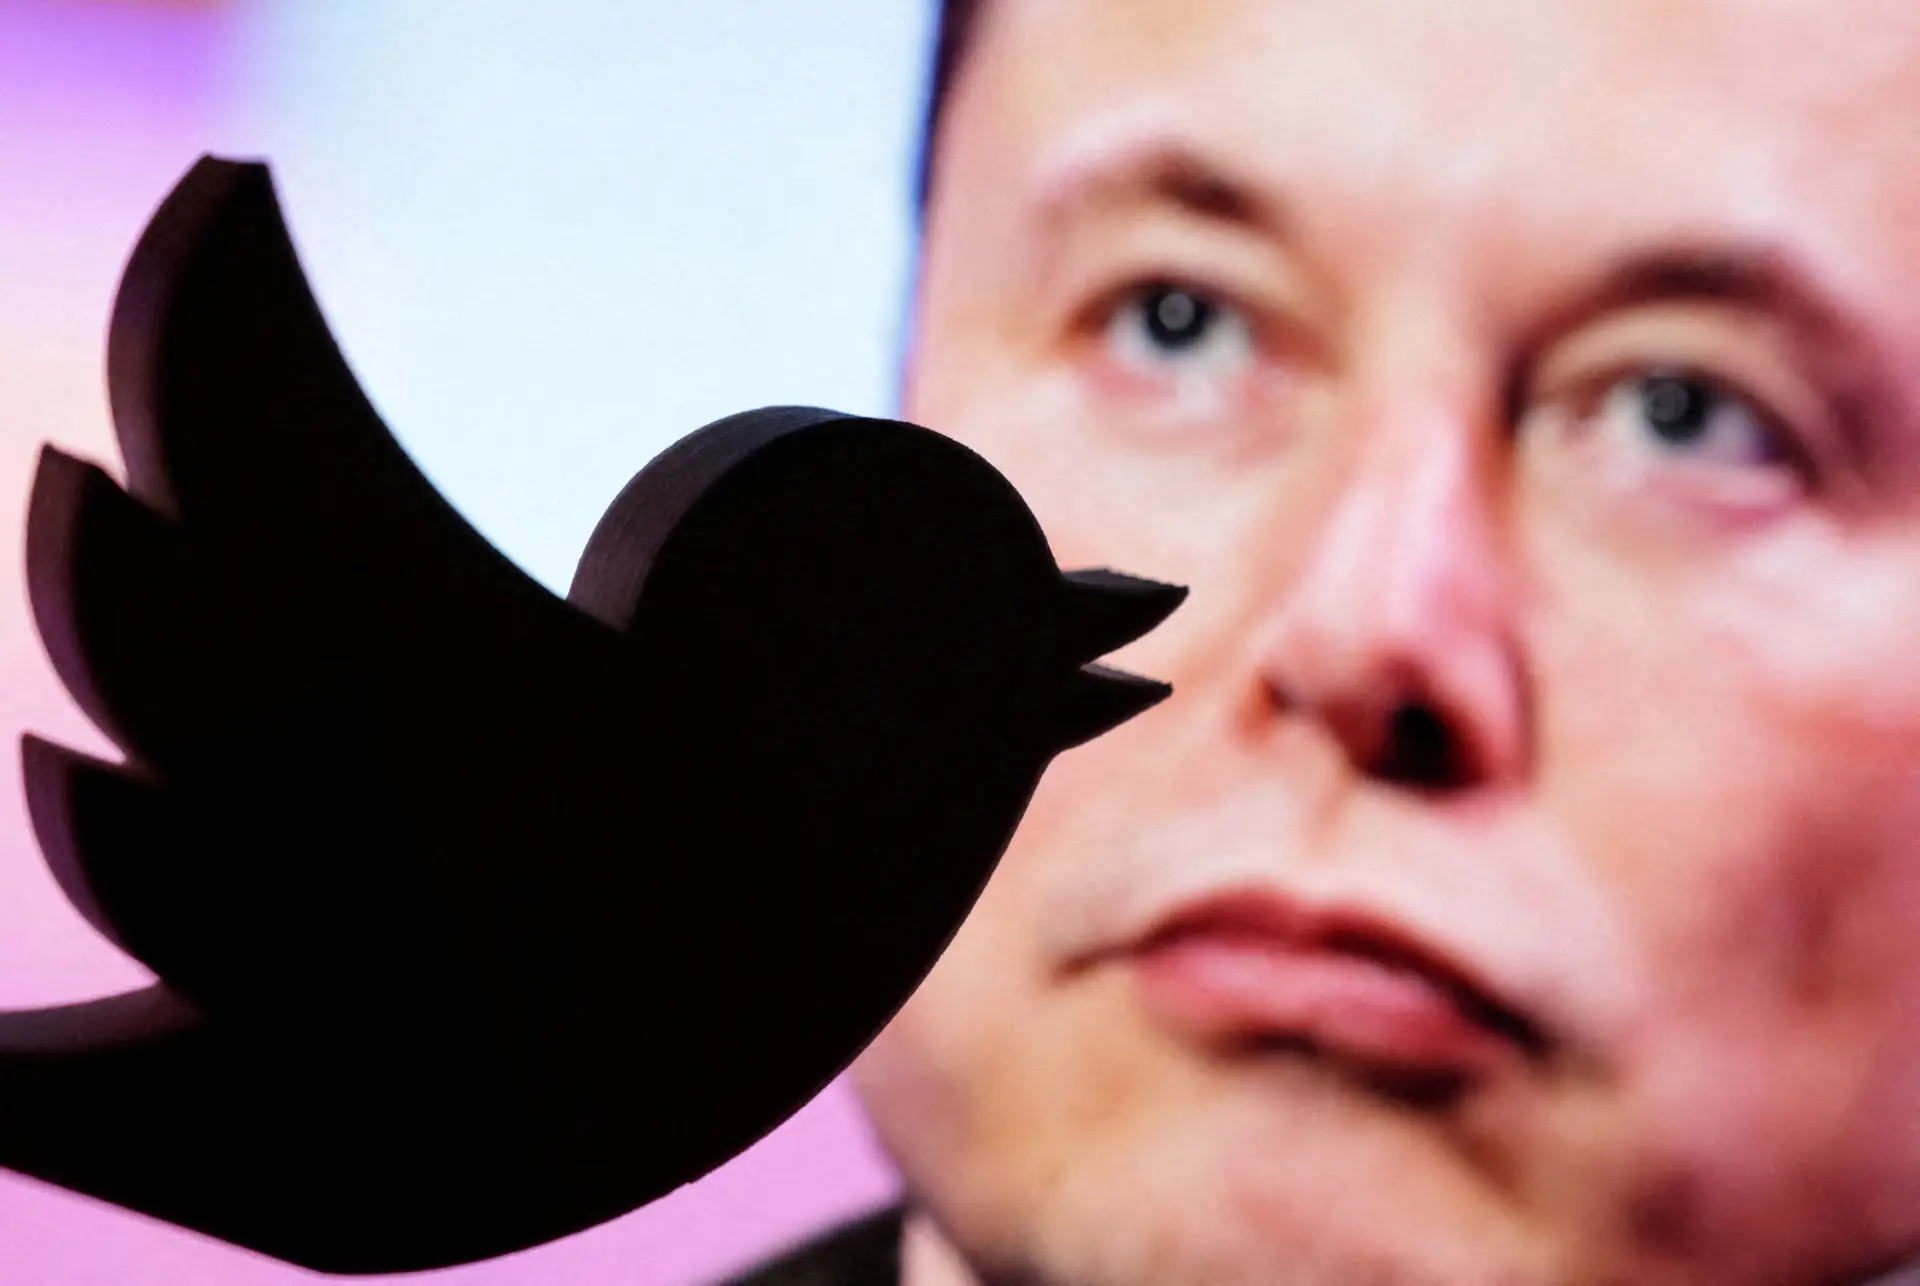 "Devo abandonar a liderança" do Twitter? Quase 60% responde "sim" a Musk